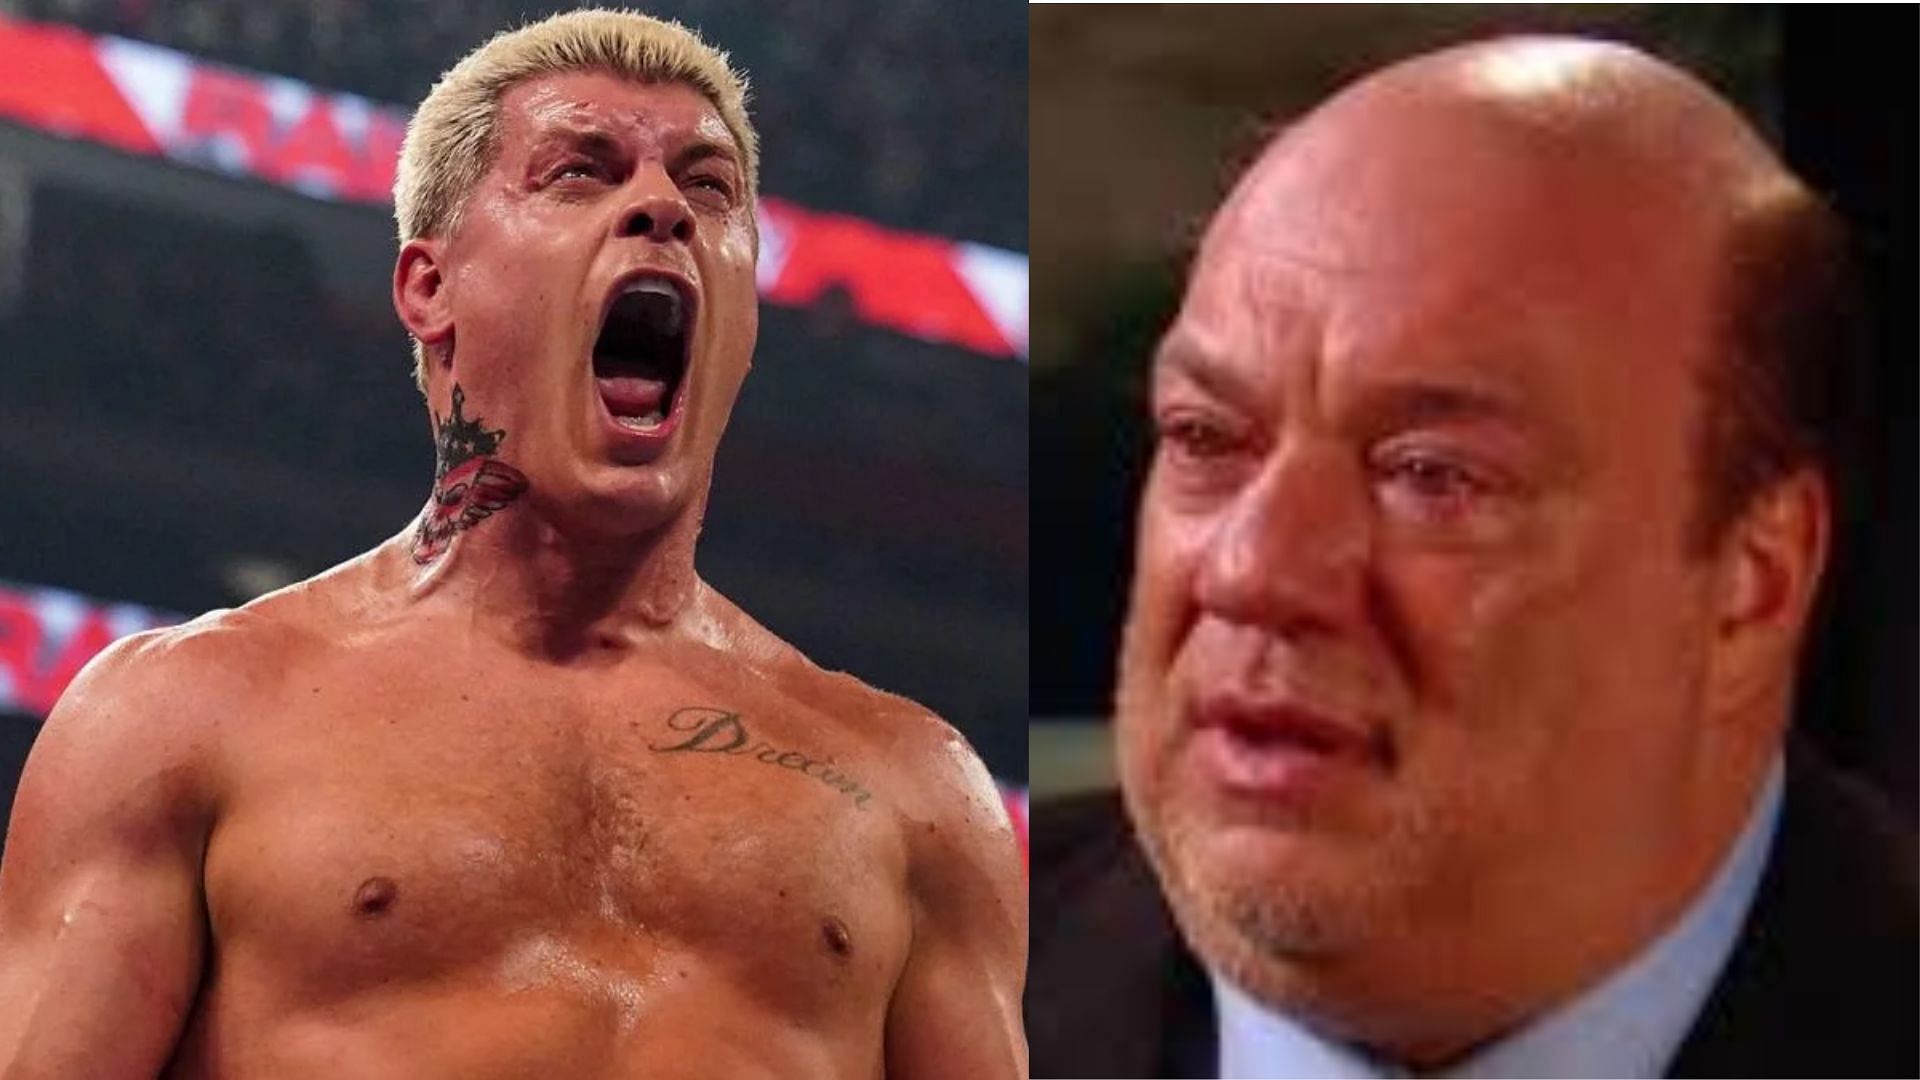 Cody Rhodes and Paul Heyman had an emotional segment on WWE RAW this week